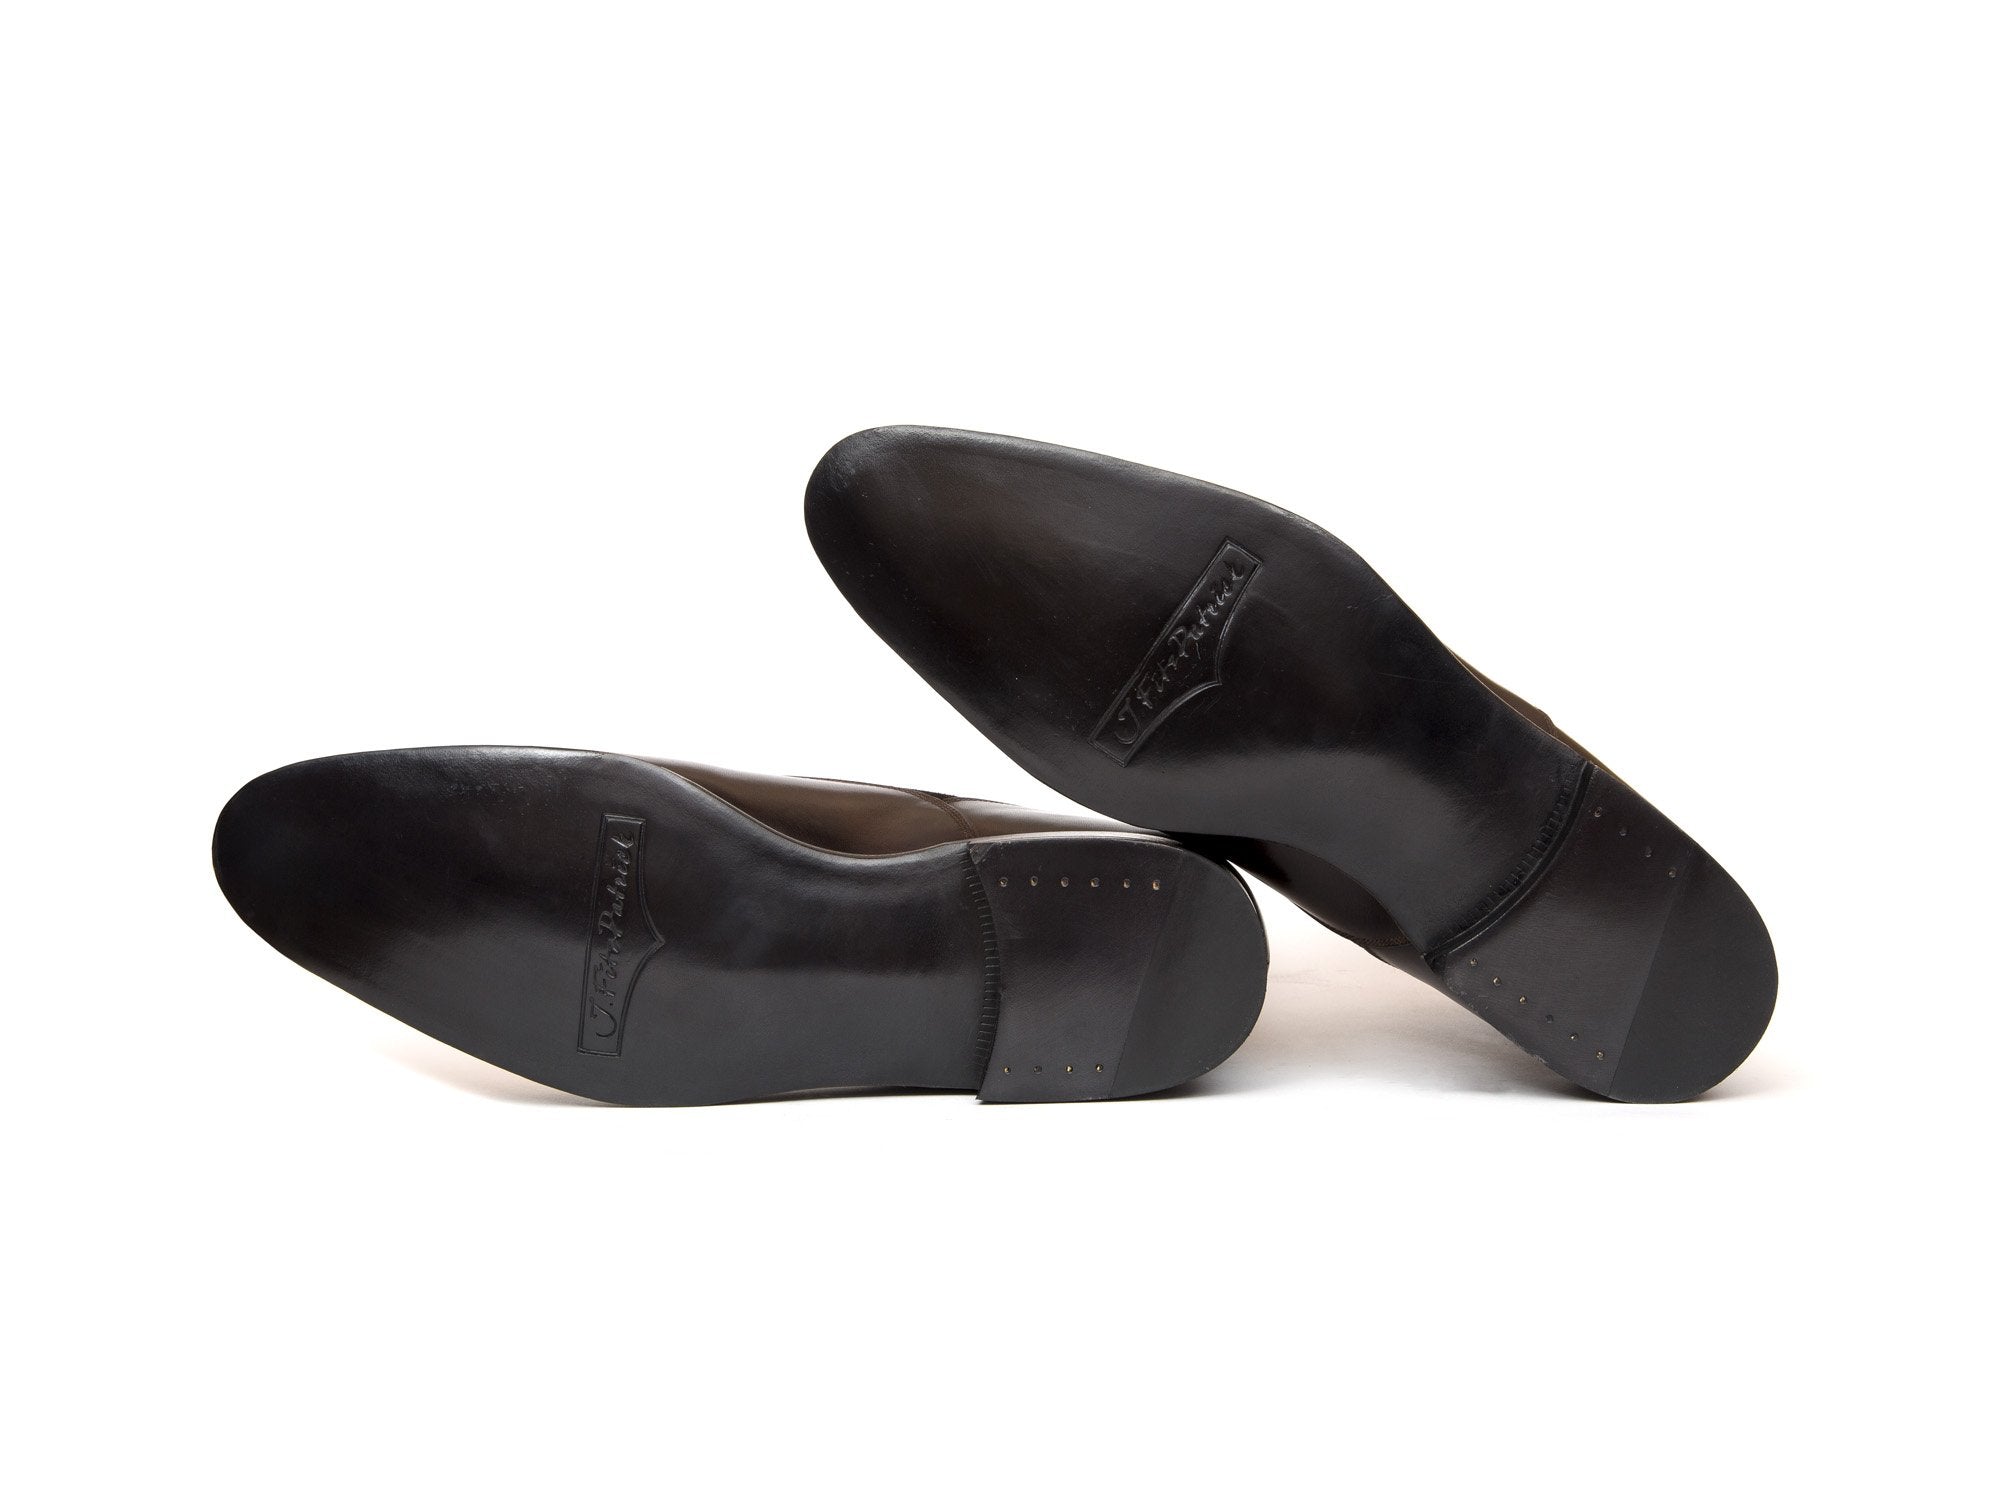 J.FitzPatrick Footwear - Carkeek - Dark Brown Museum / Calf Suede - NGT Last